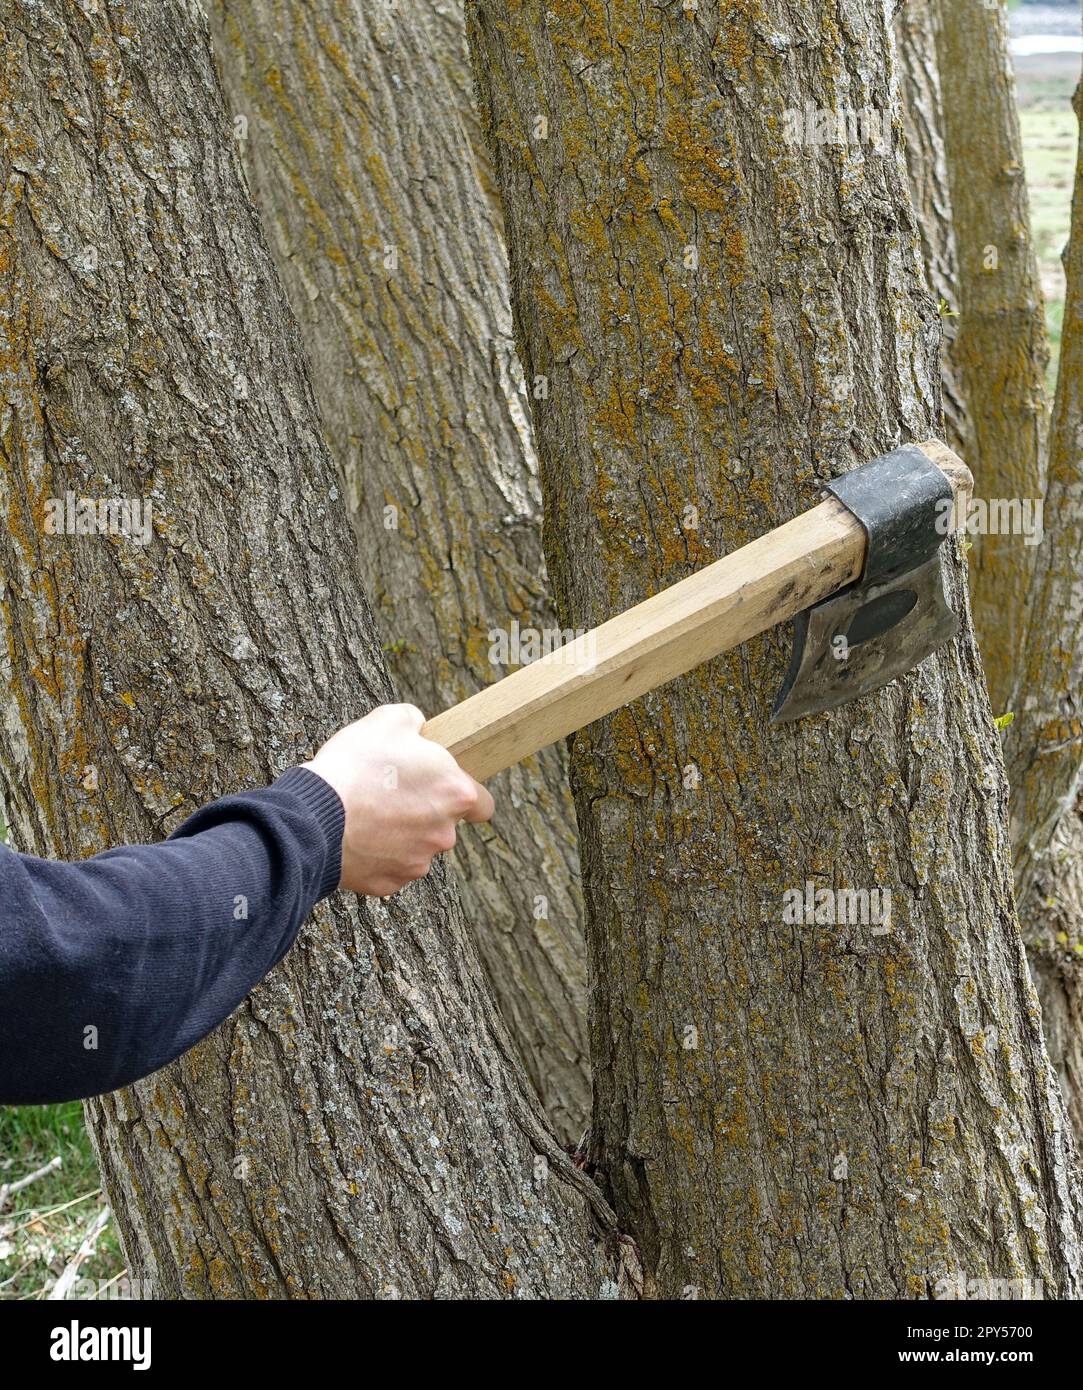 abattage d'arbres avec une hache, abattage d'arbres, coupe d'arbres sans permission, arbres et haches Banque D'Images